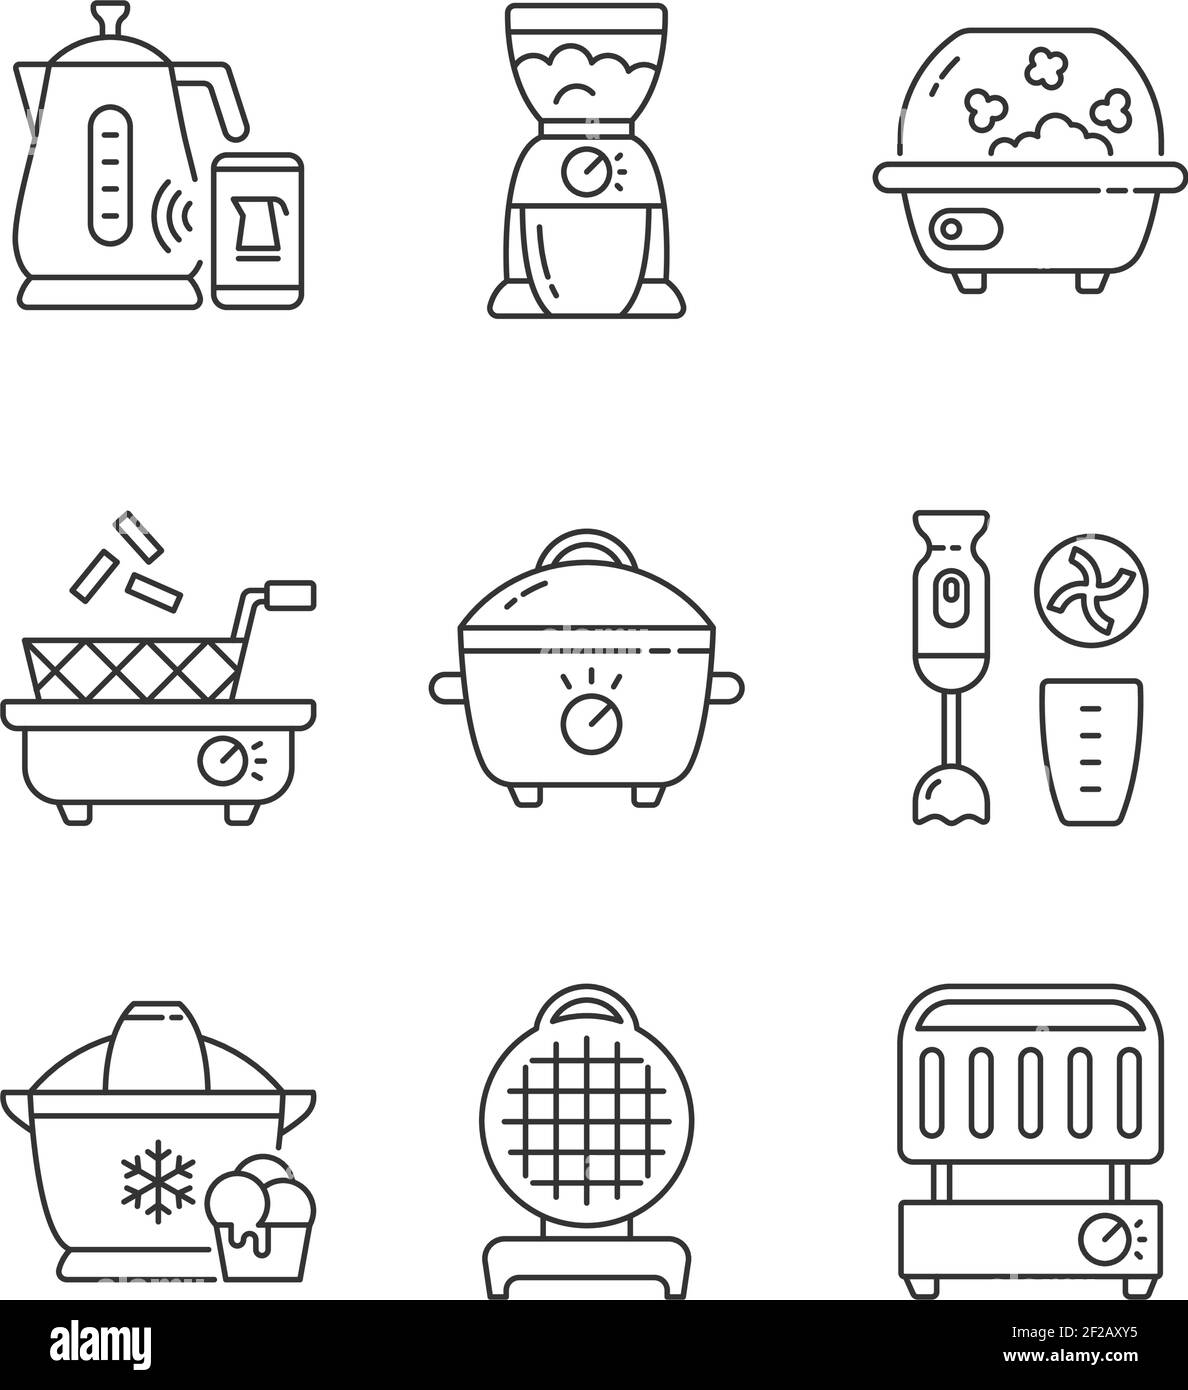 Jeu d'icônes linéaires pour appareils de cuisson électriques Illustration de Vecteur